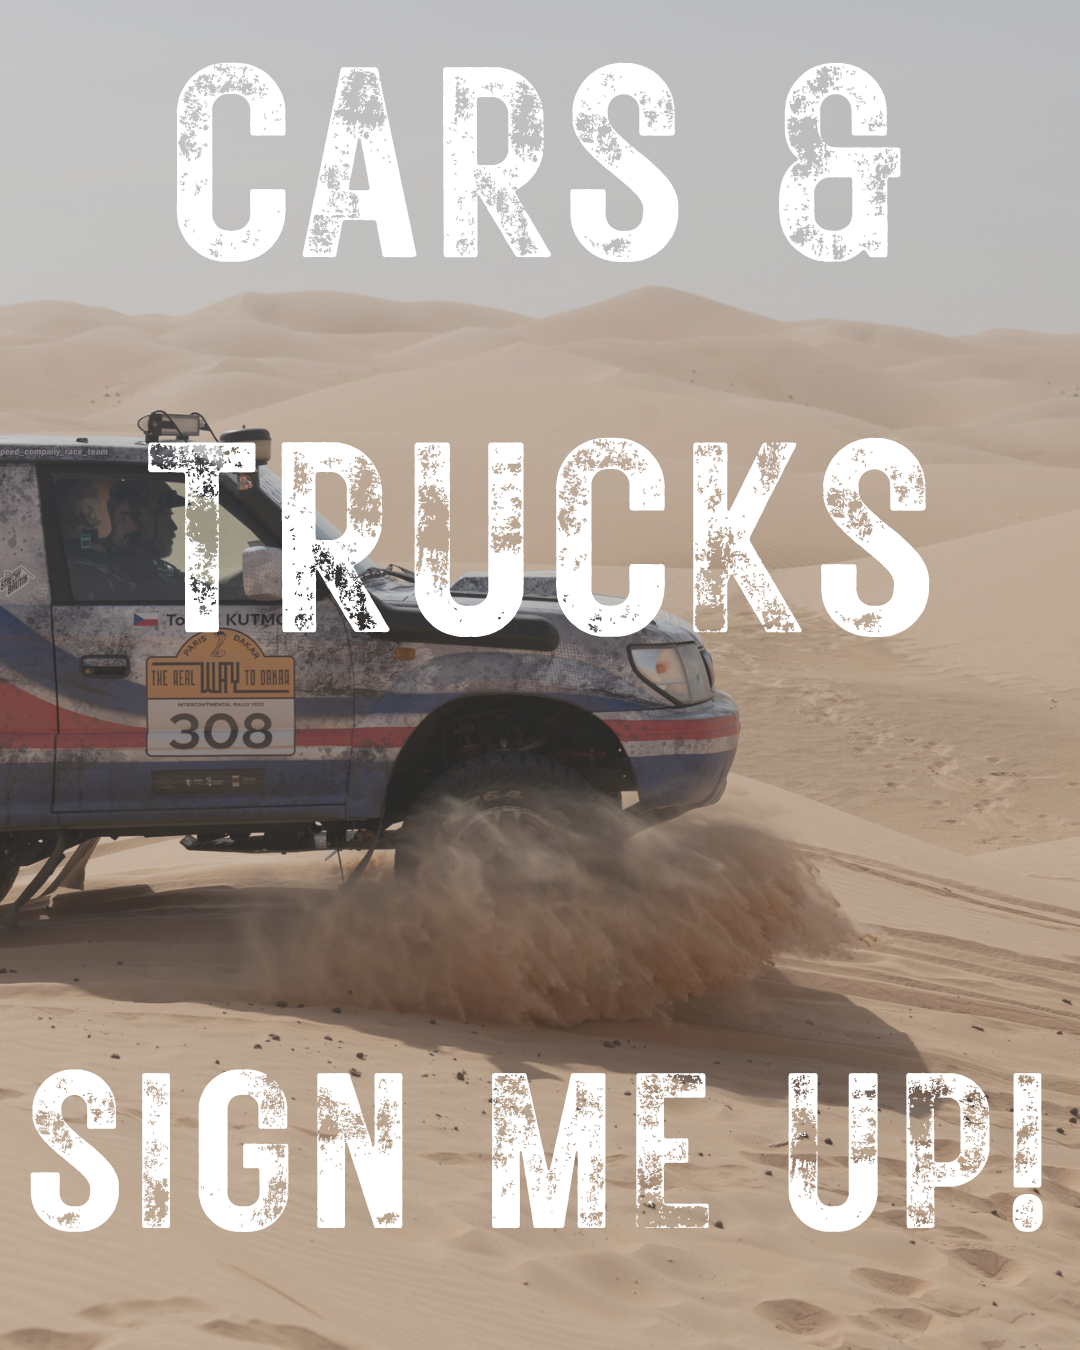 The Real Way to Dakar Cars & Trucks category